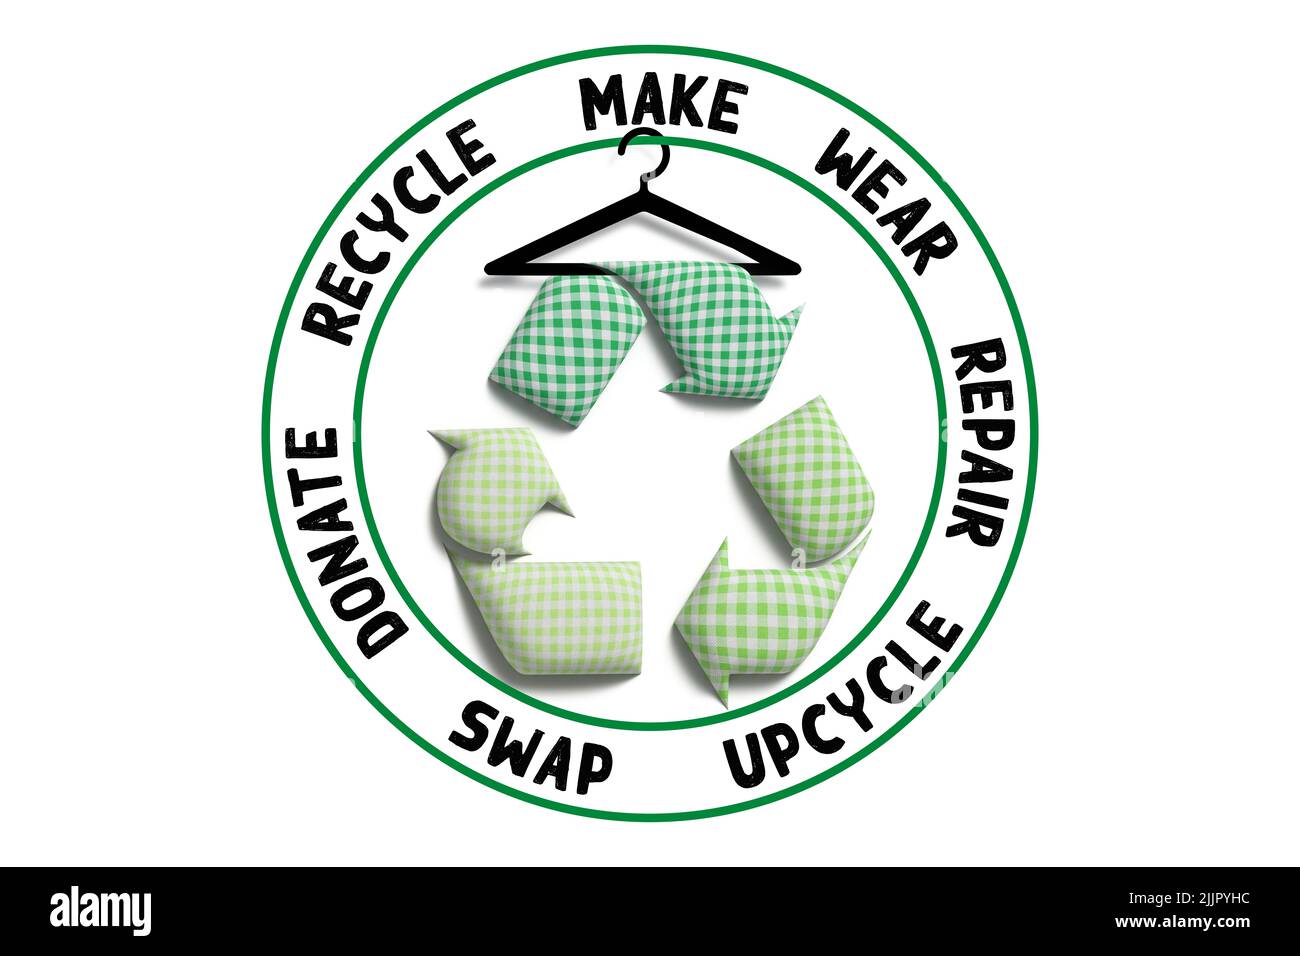 Recyceln Sie Textilien, recyceln Sie Symbole mit recyceltem Stoff, reduzieren Sie Textilabfälle und fördern Sie nachhaltige Mode Stockfoto